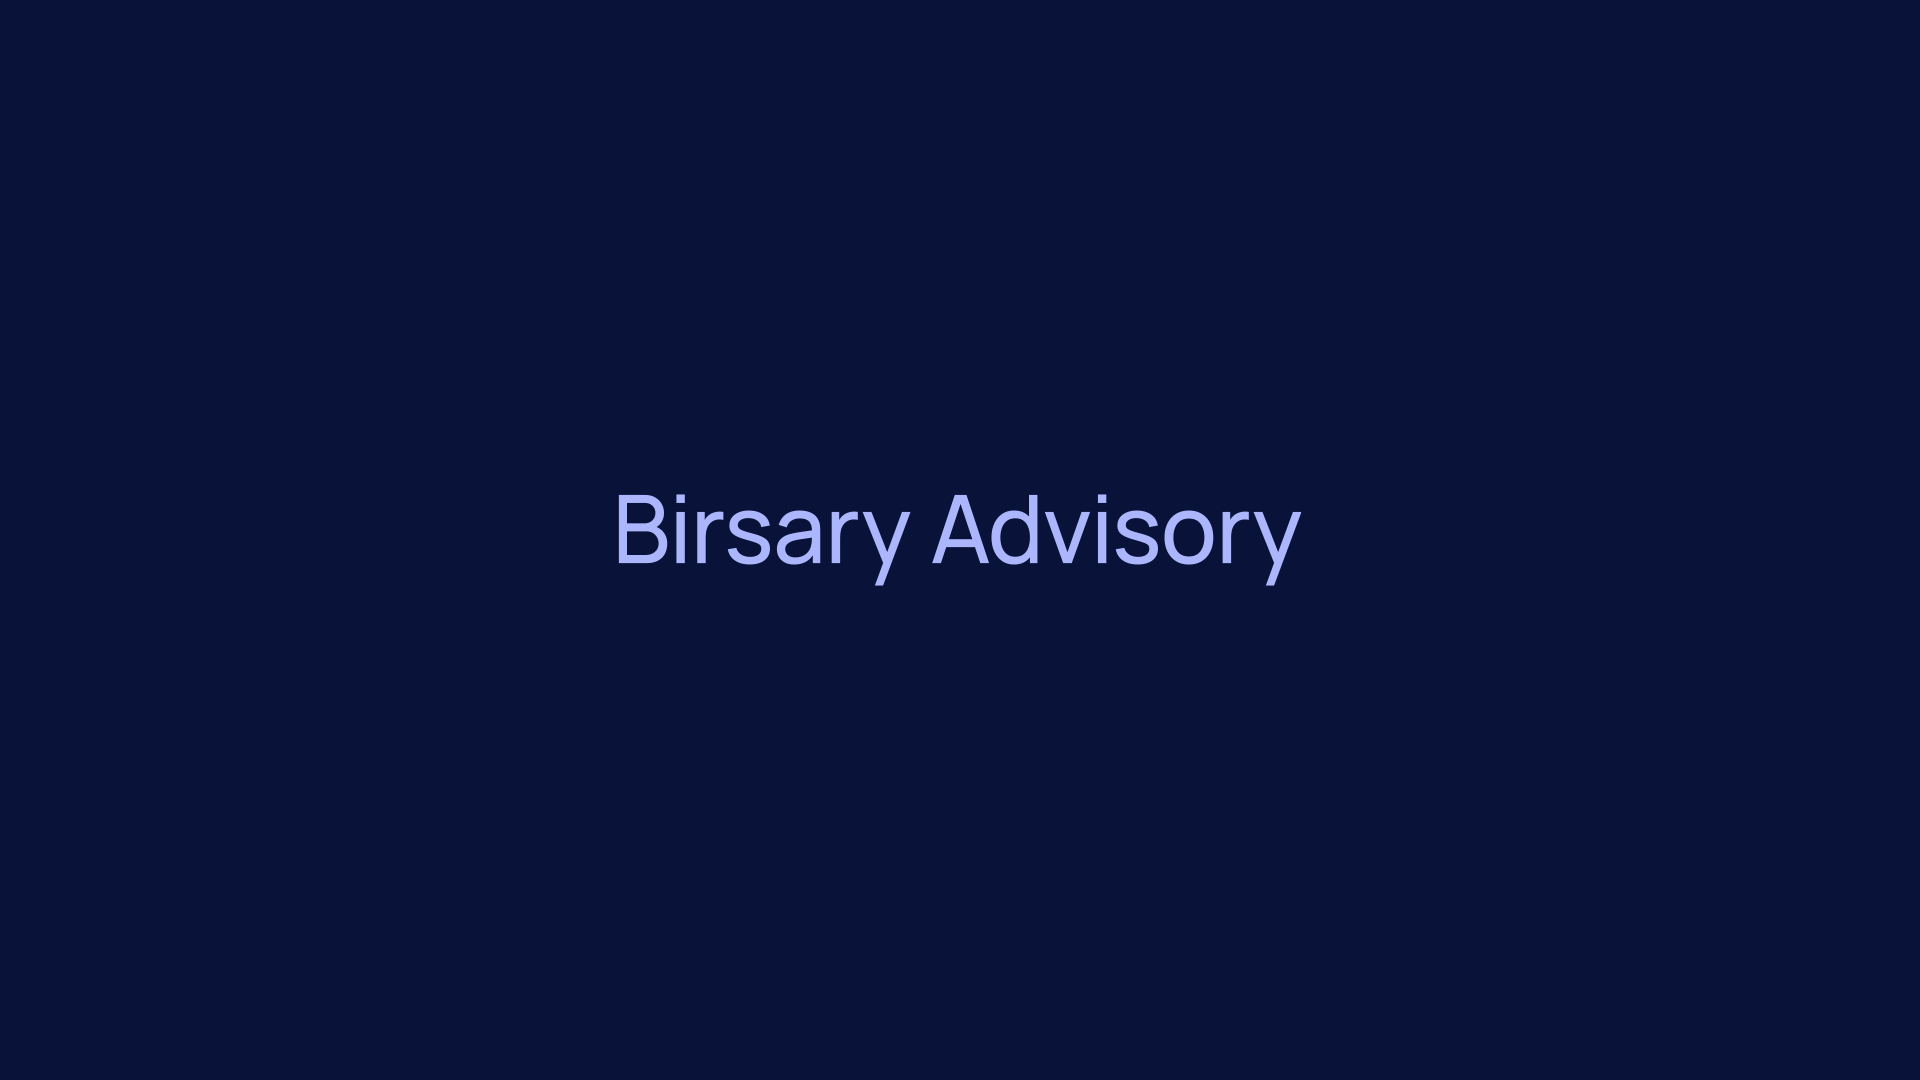 Birsary Advisory